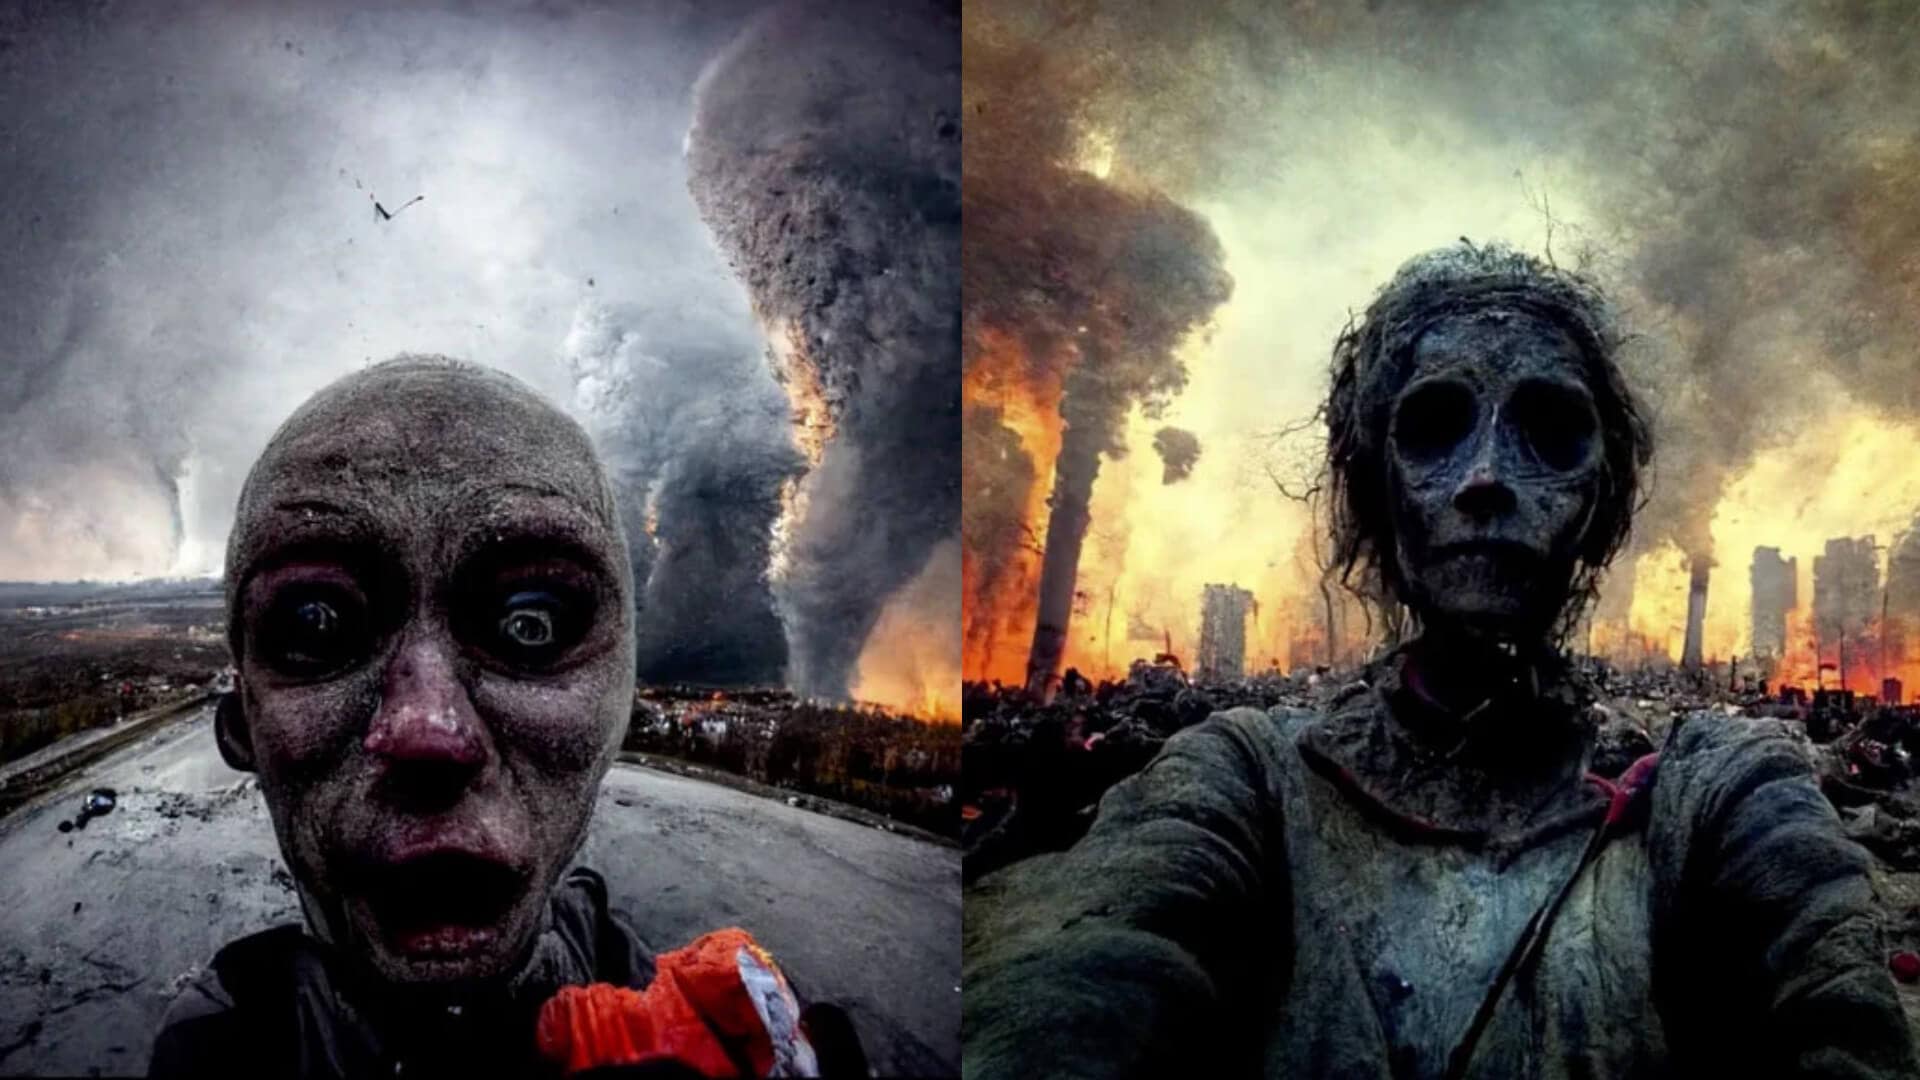 Last Selfies On Earth